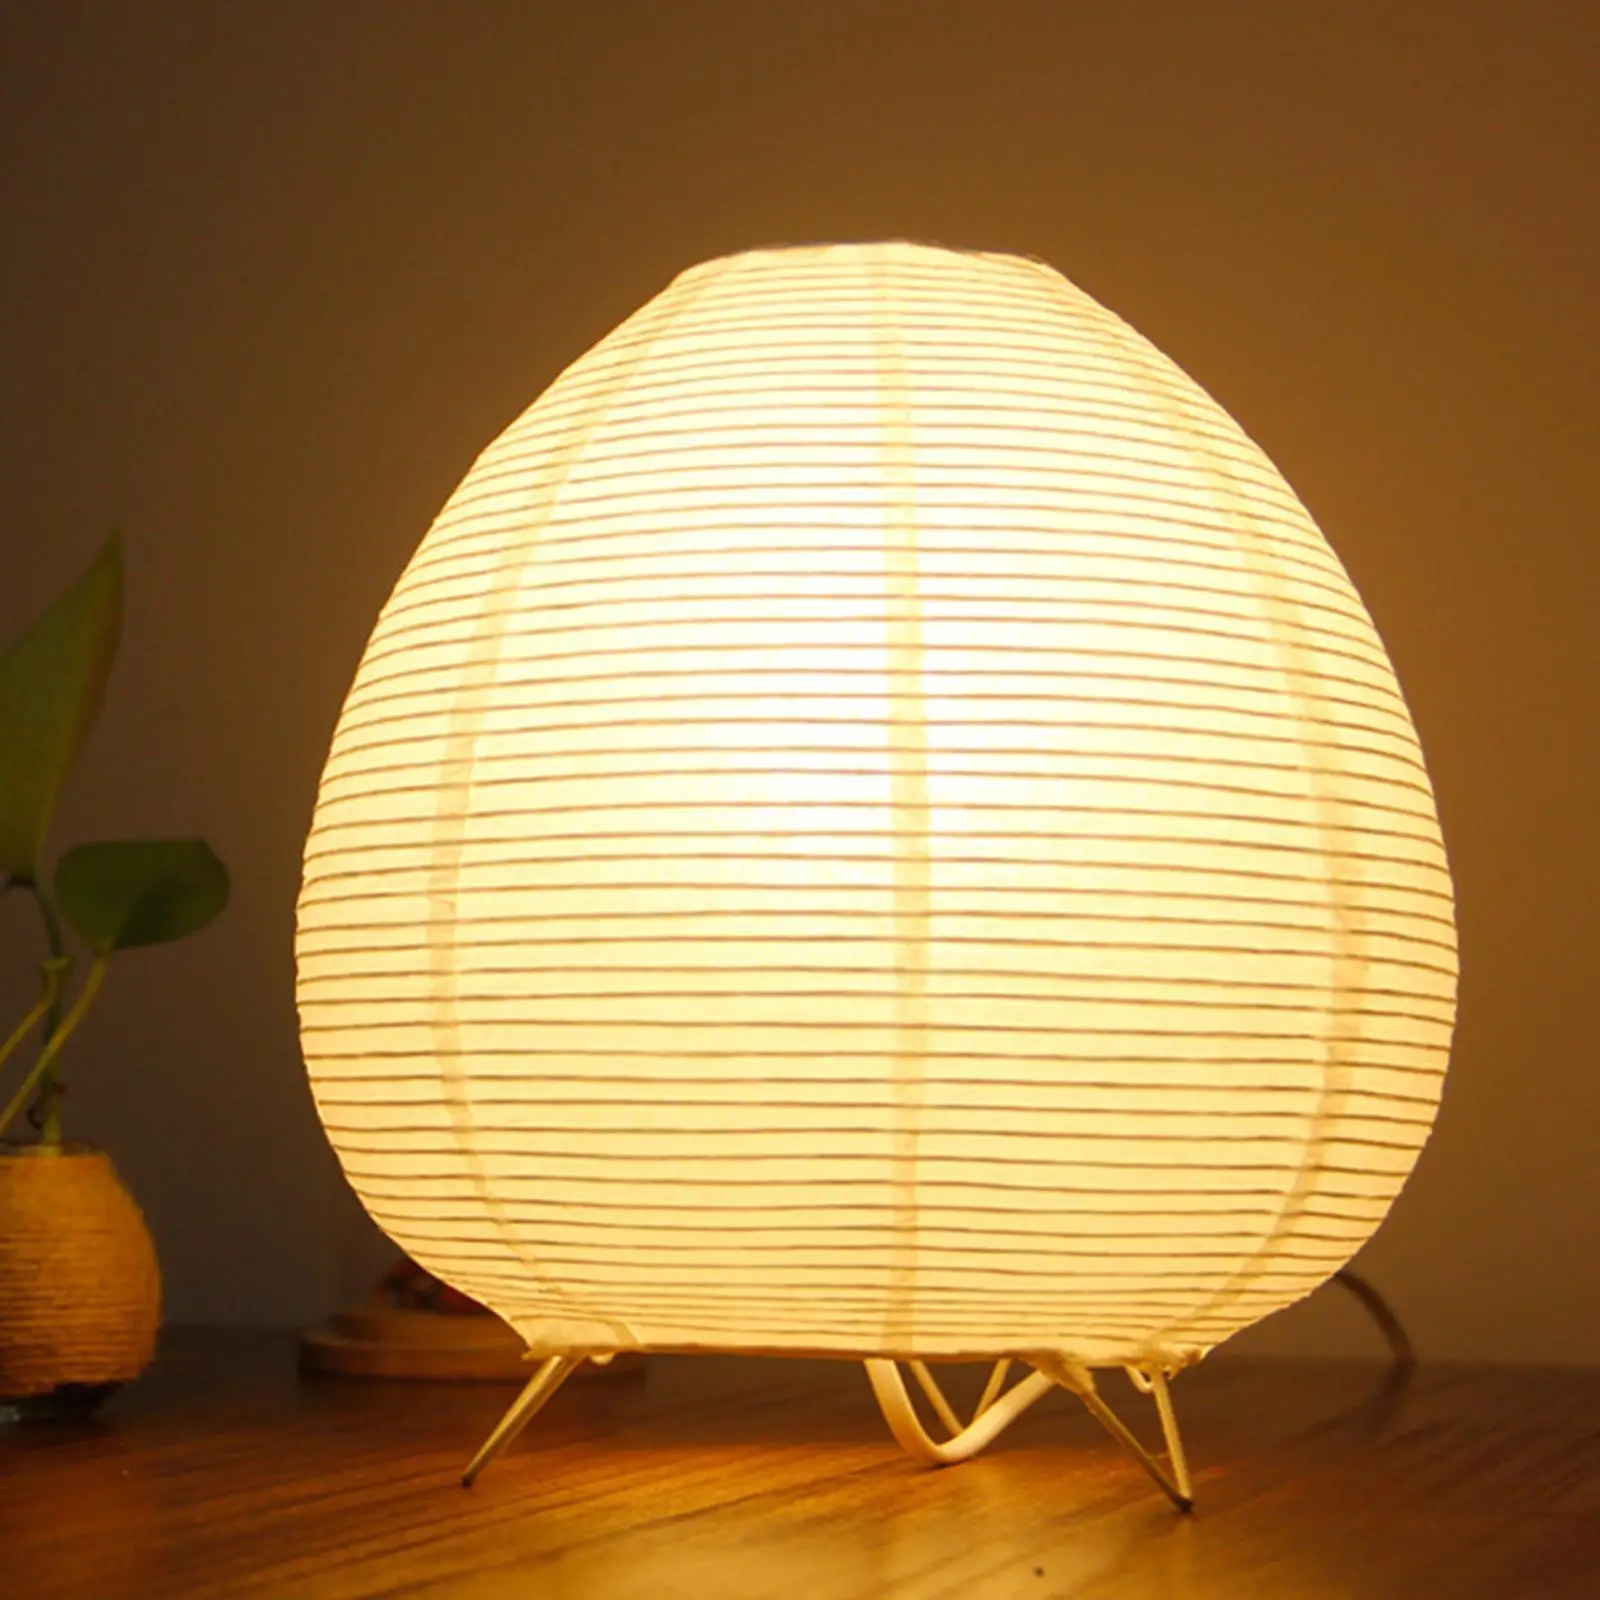 Bedside Paper Lantern Table Lamp Modern Simple for Dorm Bedroom Living Room